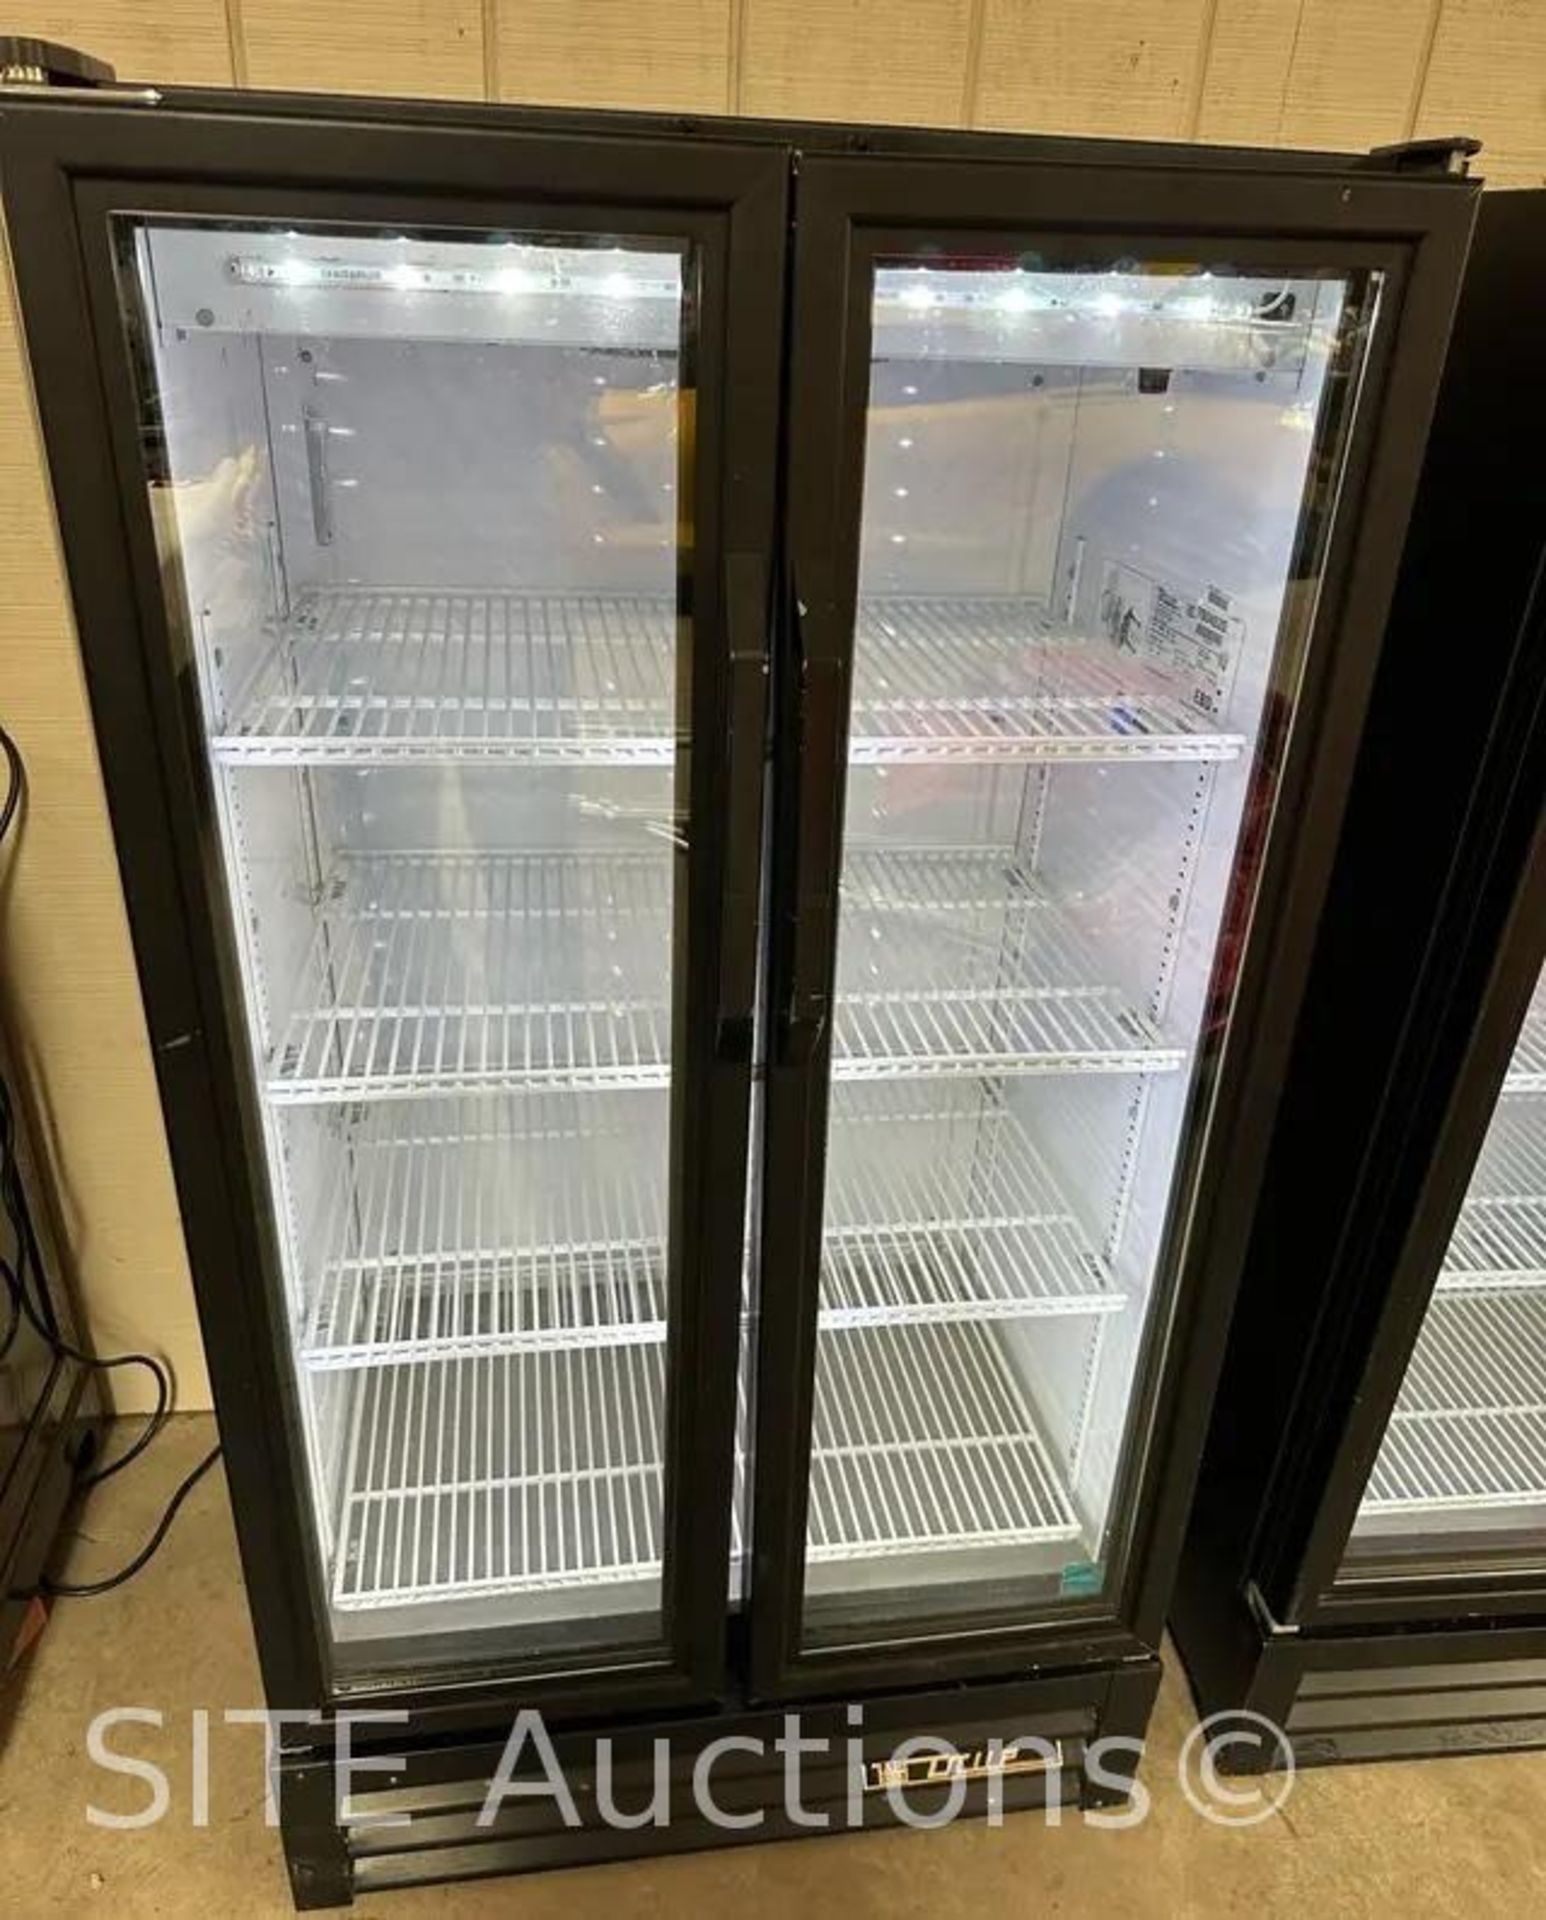 True Refrigerator - Image 2 of 3